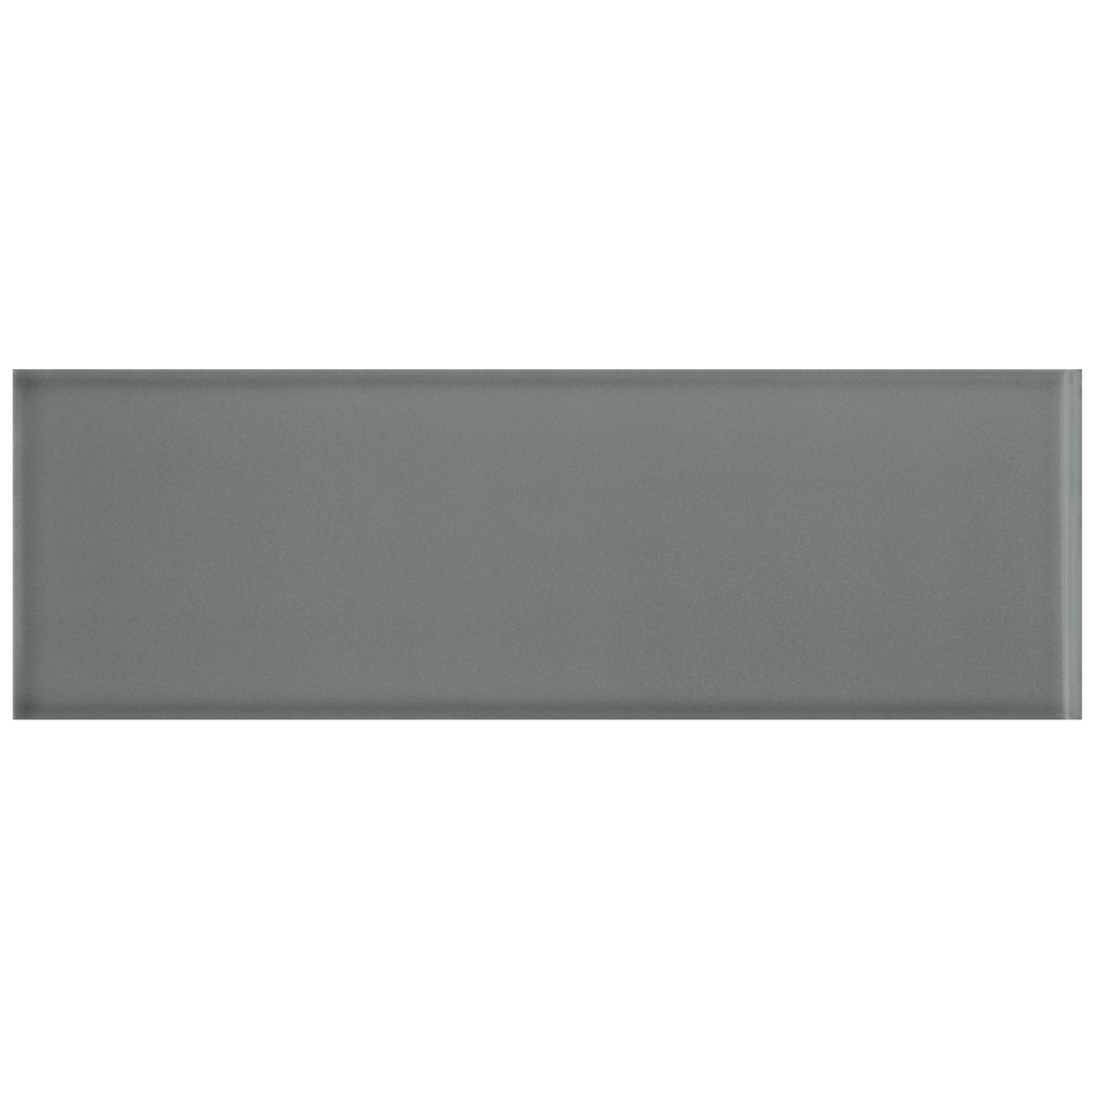 Imperial Fog Grey Gls (079) RES 10x30cm